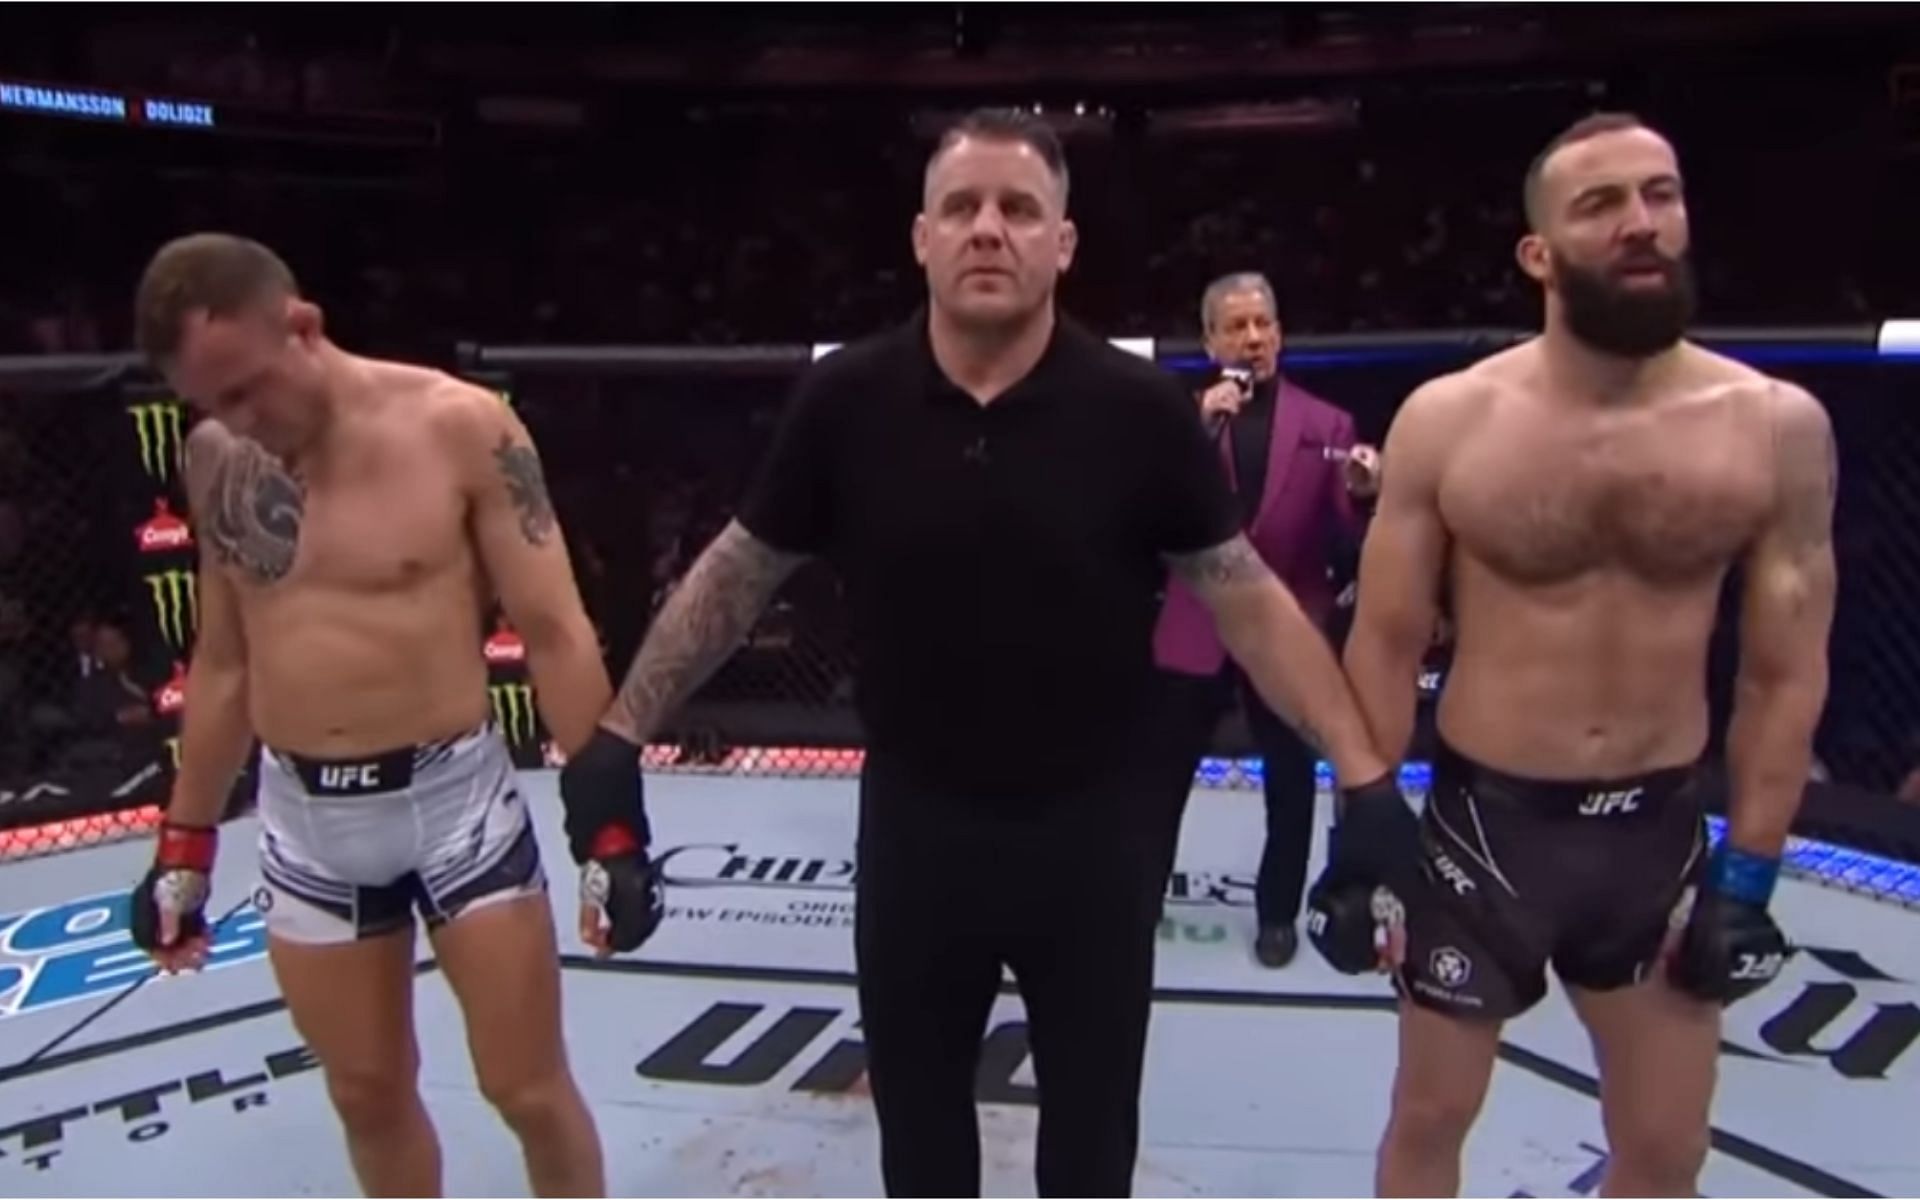 Jack Hermansson (left), Roman Dolidze (right) [Images courtesy of UFC on YouTube]